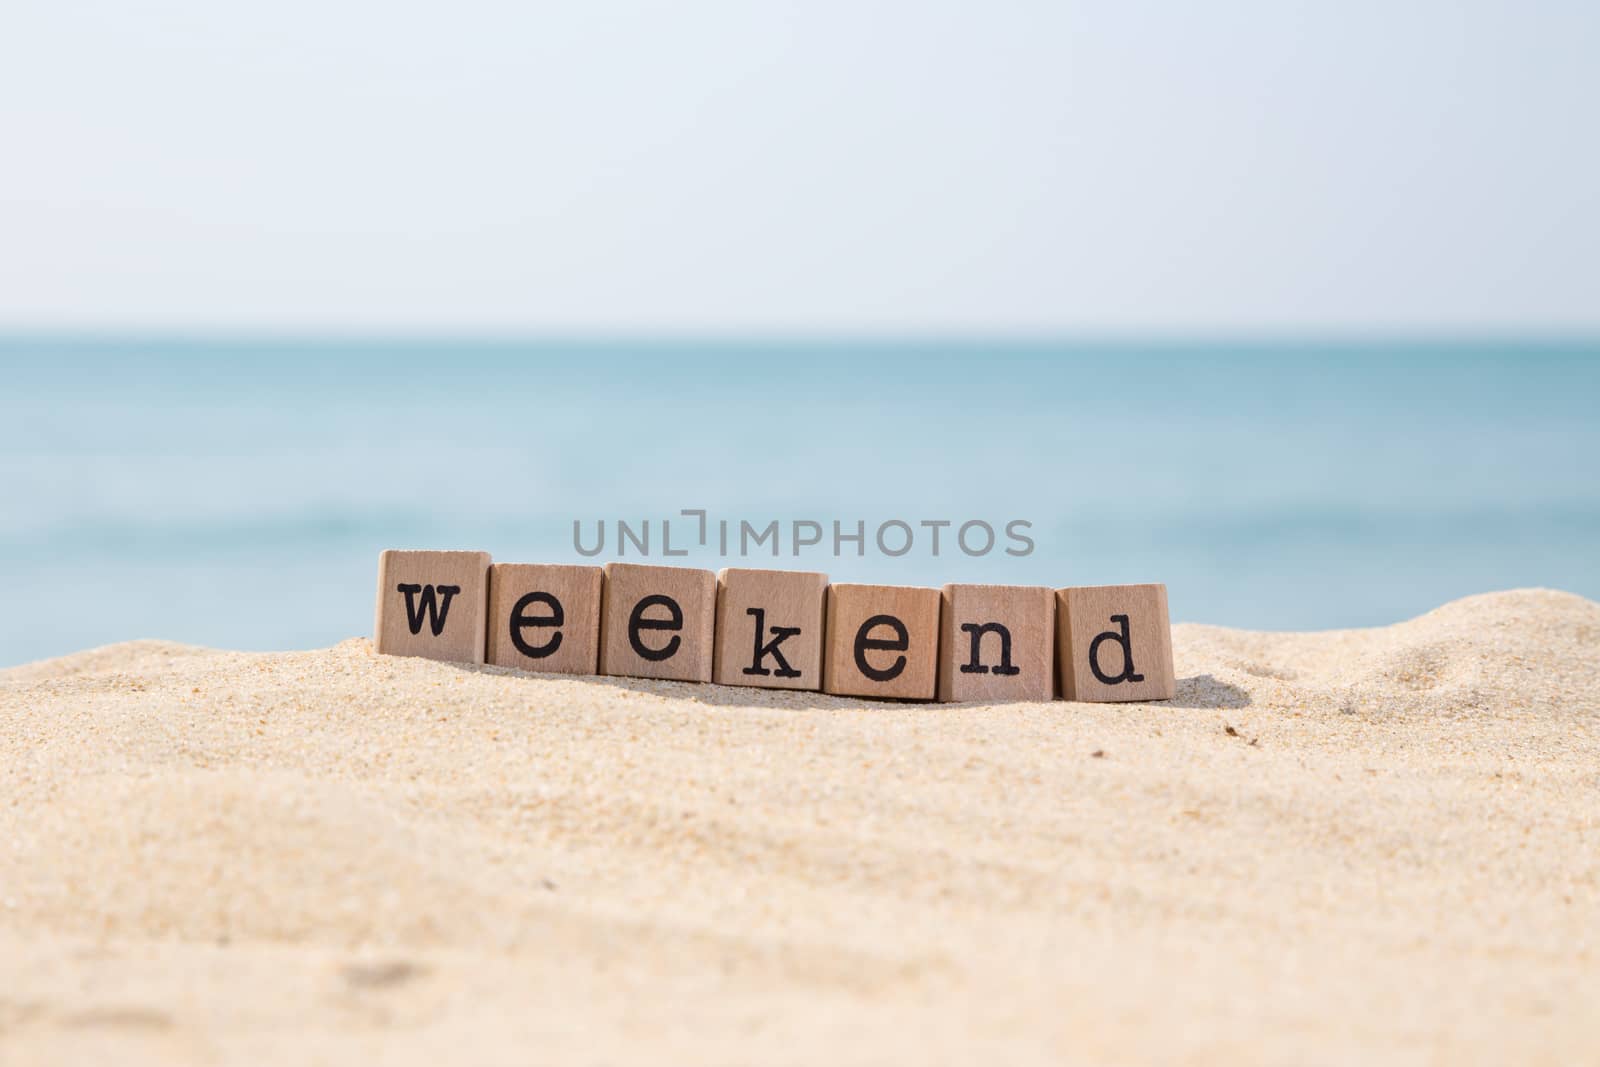 Weekend breaks and beach holidays  by vinnstock